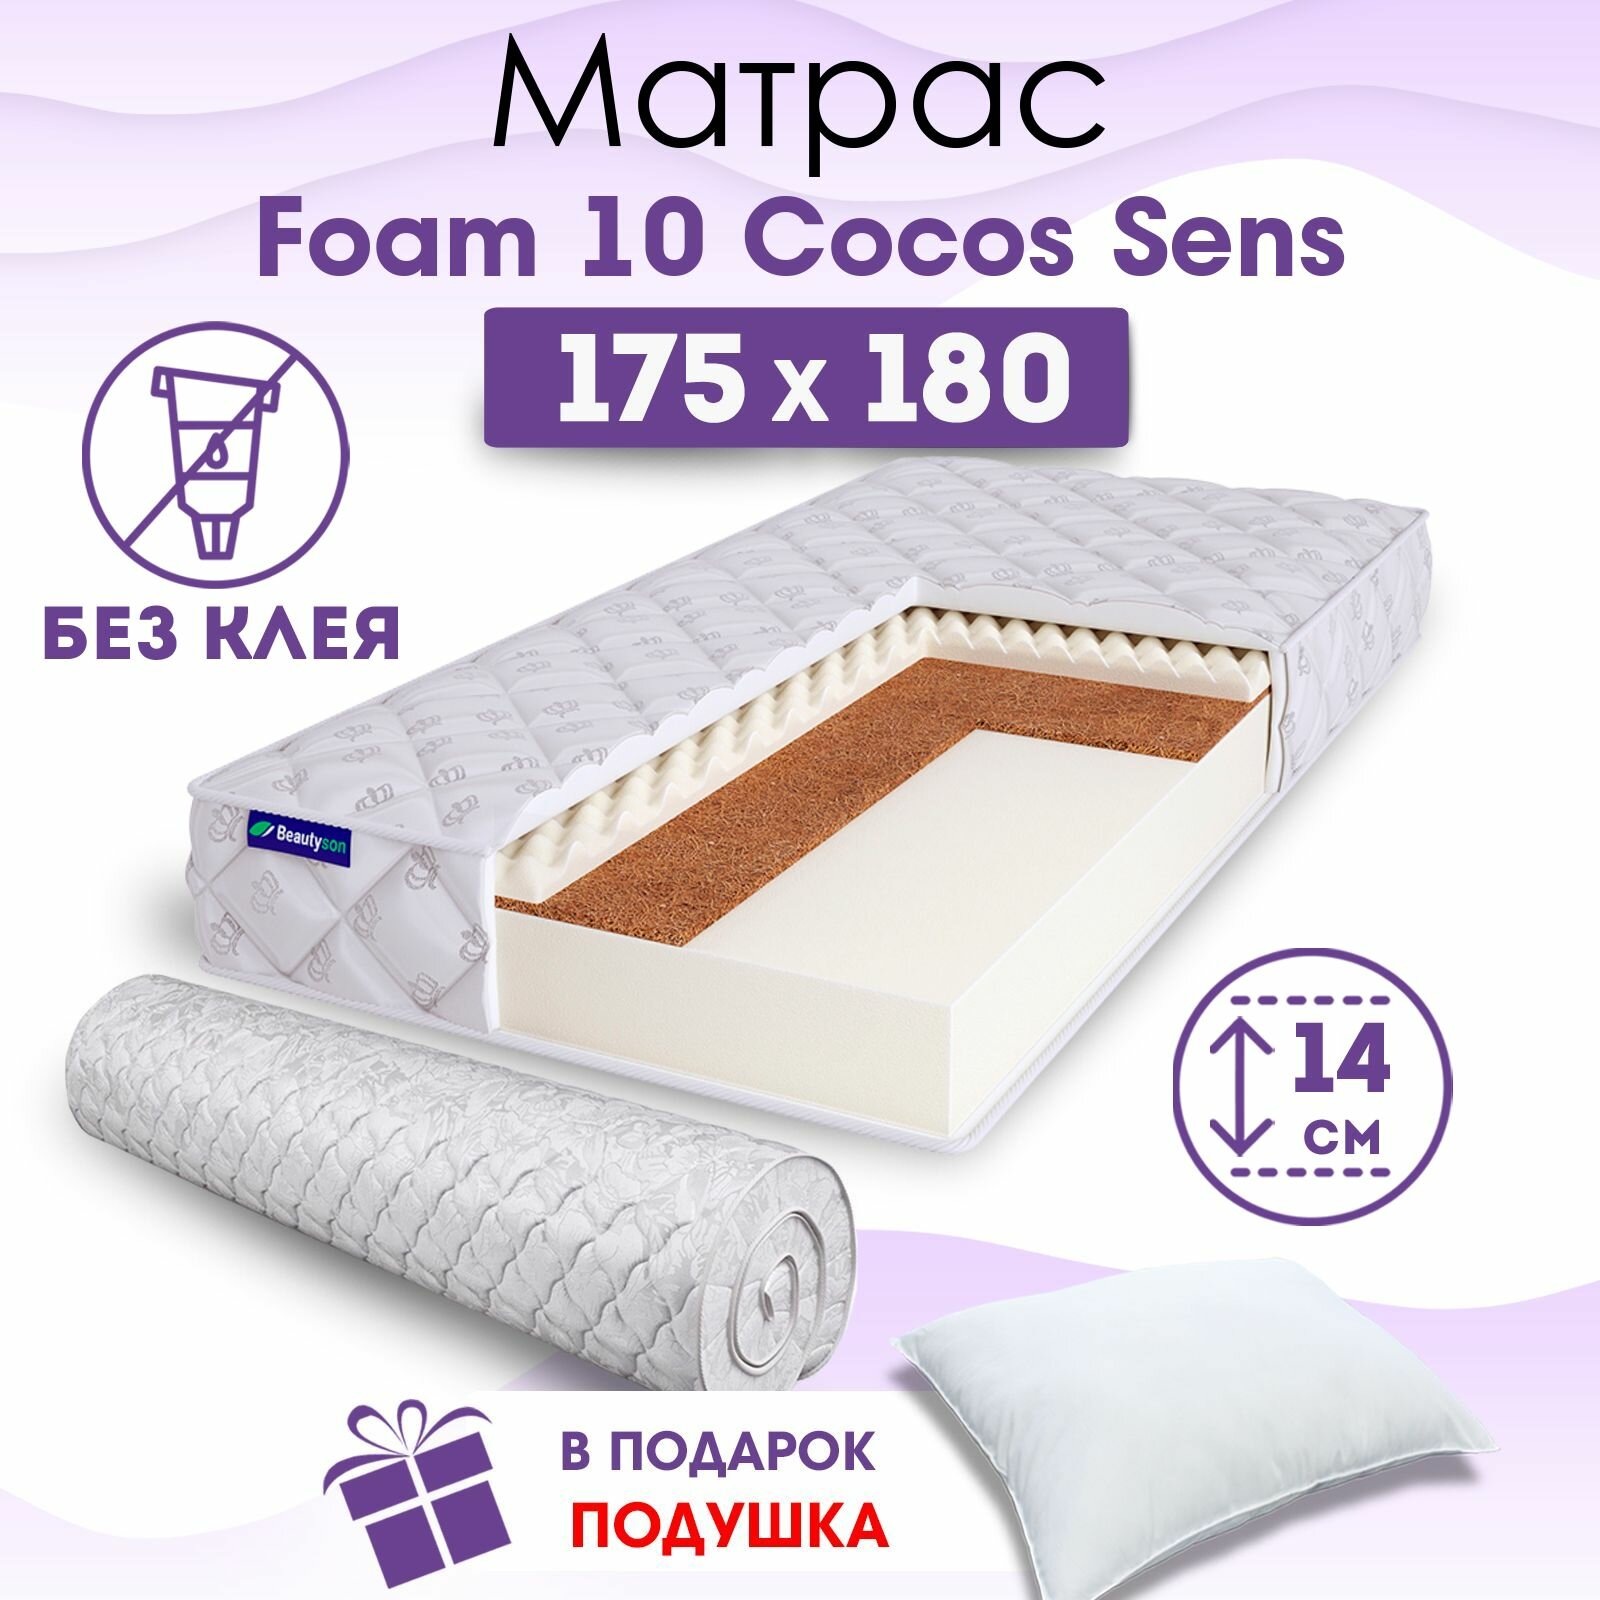 Ортопедический матрас Beautyson Foam 10 Cocos Sens без клея, 175х180, 14 см, беспружинный, двухспальный, на кровать, для дивана, умеренно мягкий